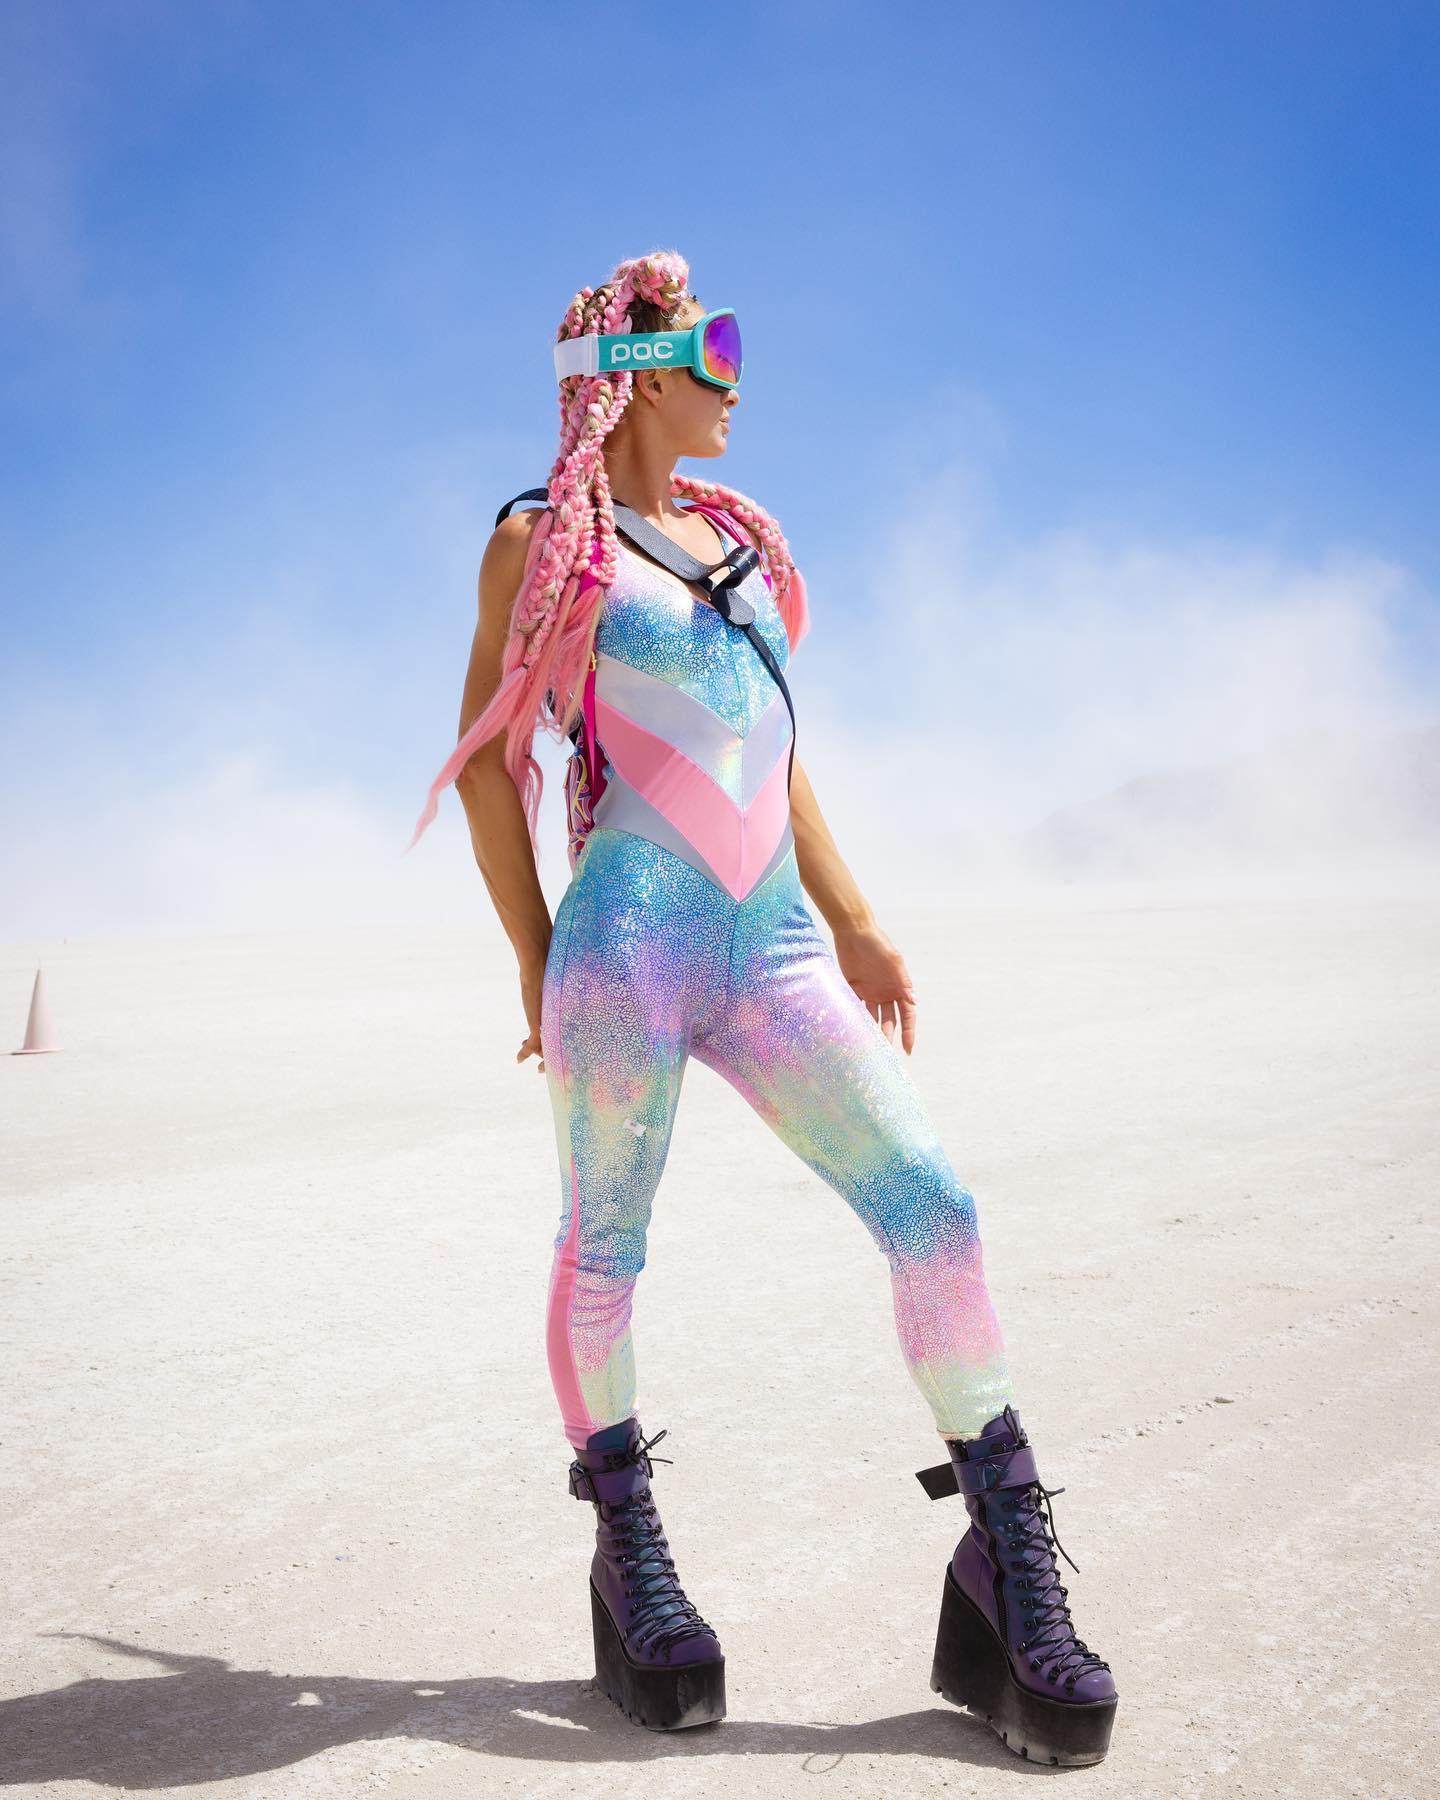 Paris Hilton at Burning Man 2022